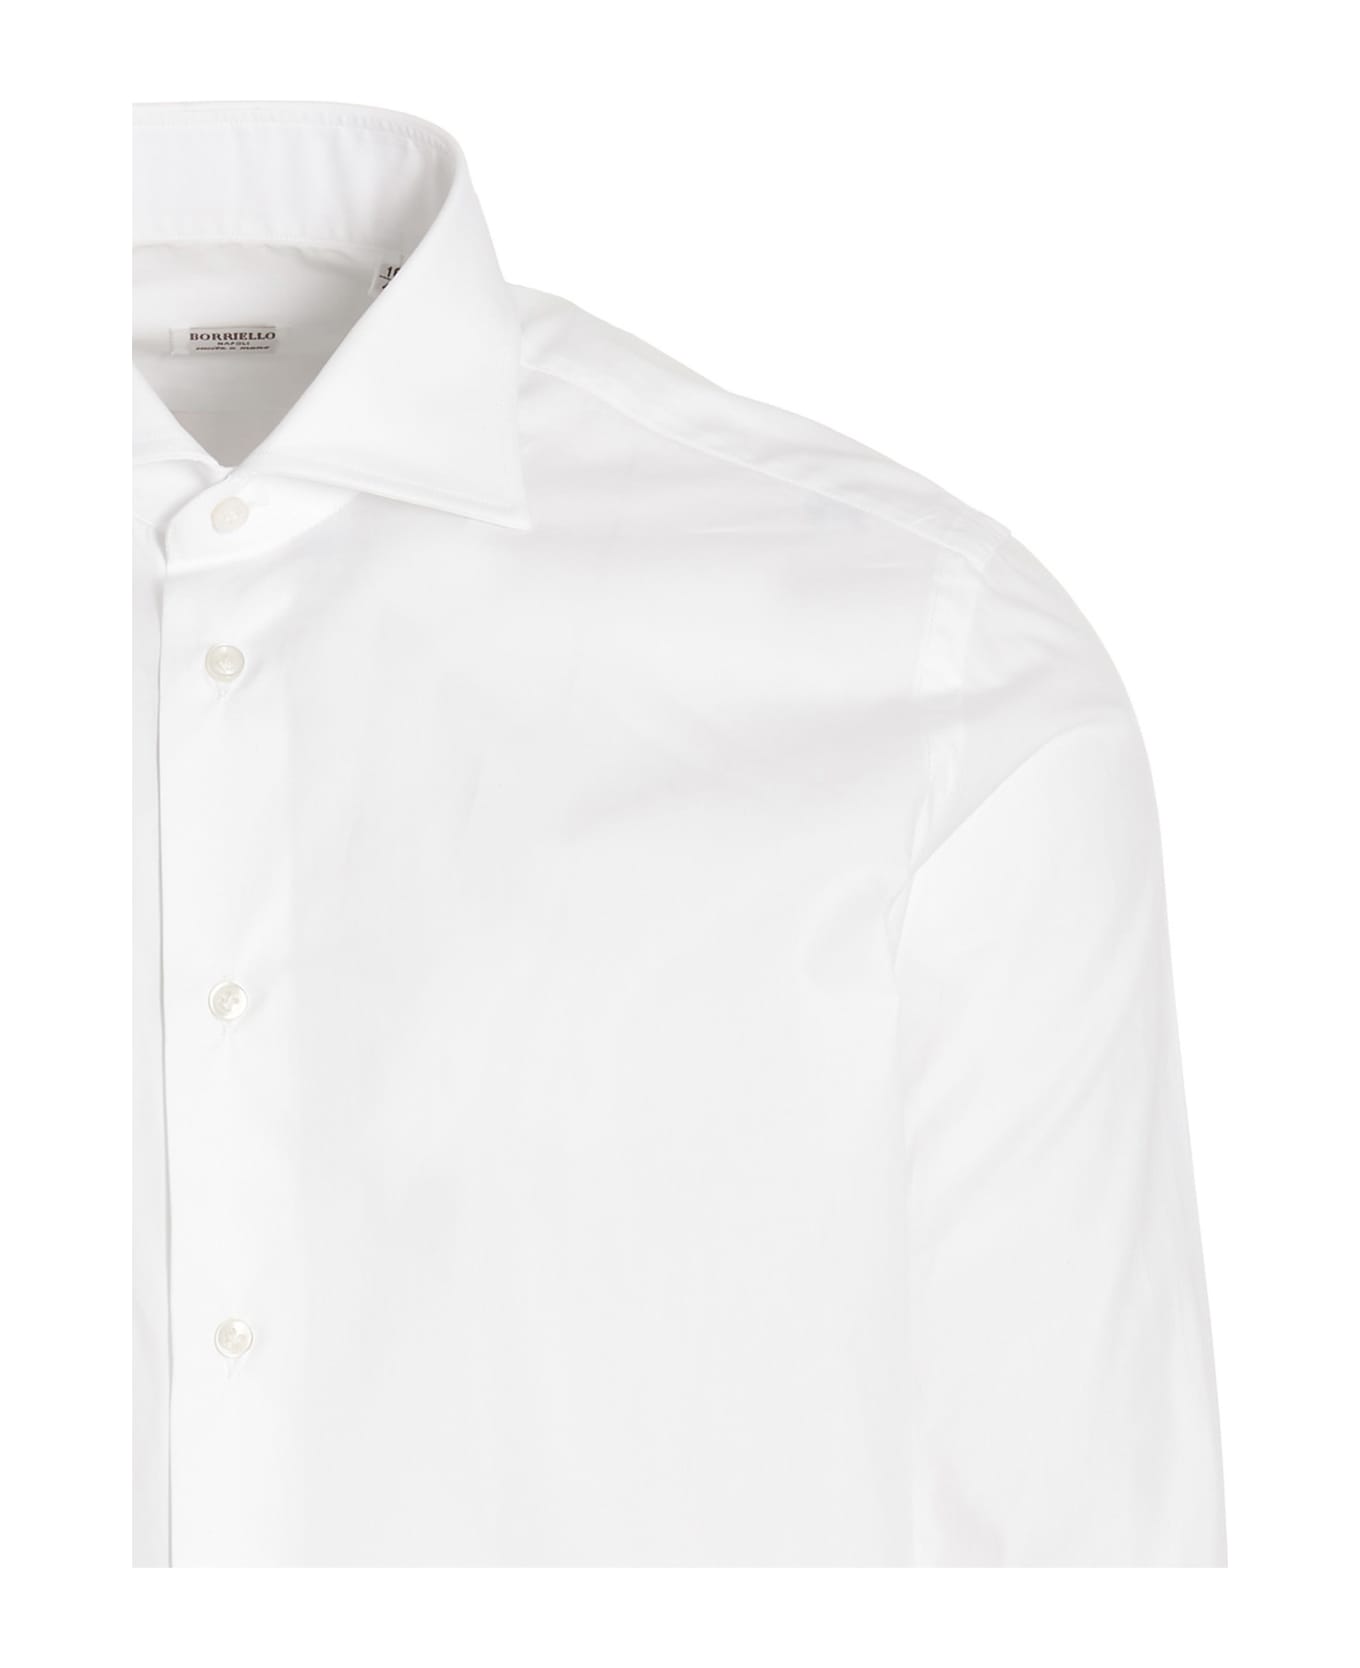 Borriello Napoli 'marechiaro' Shirt - White シャツ